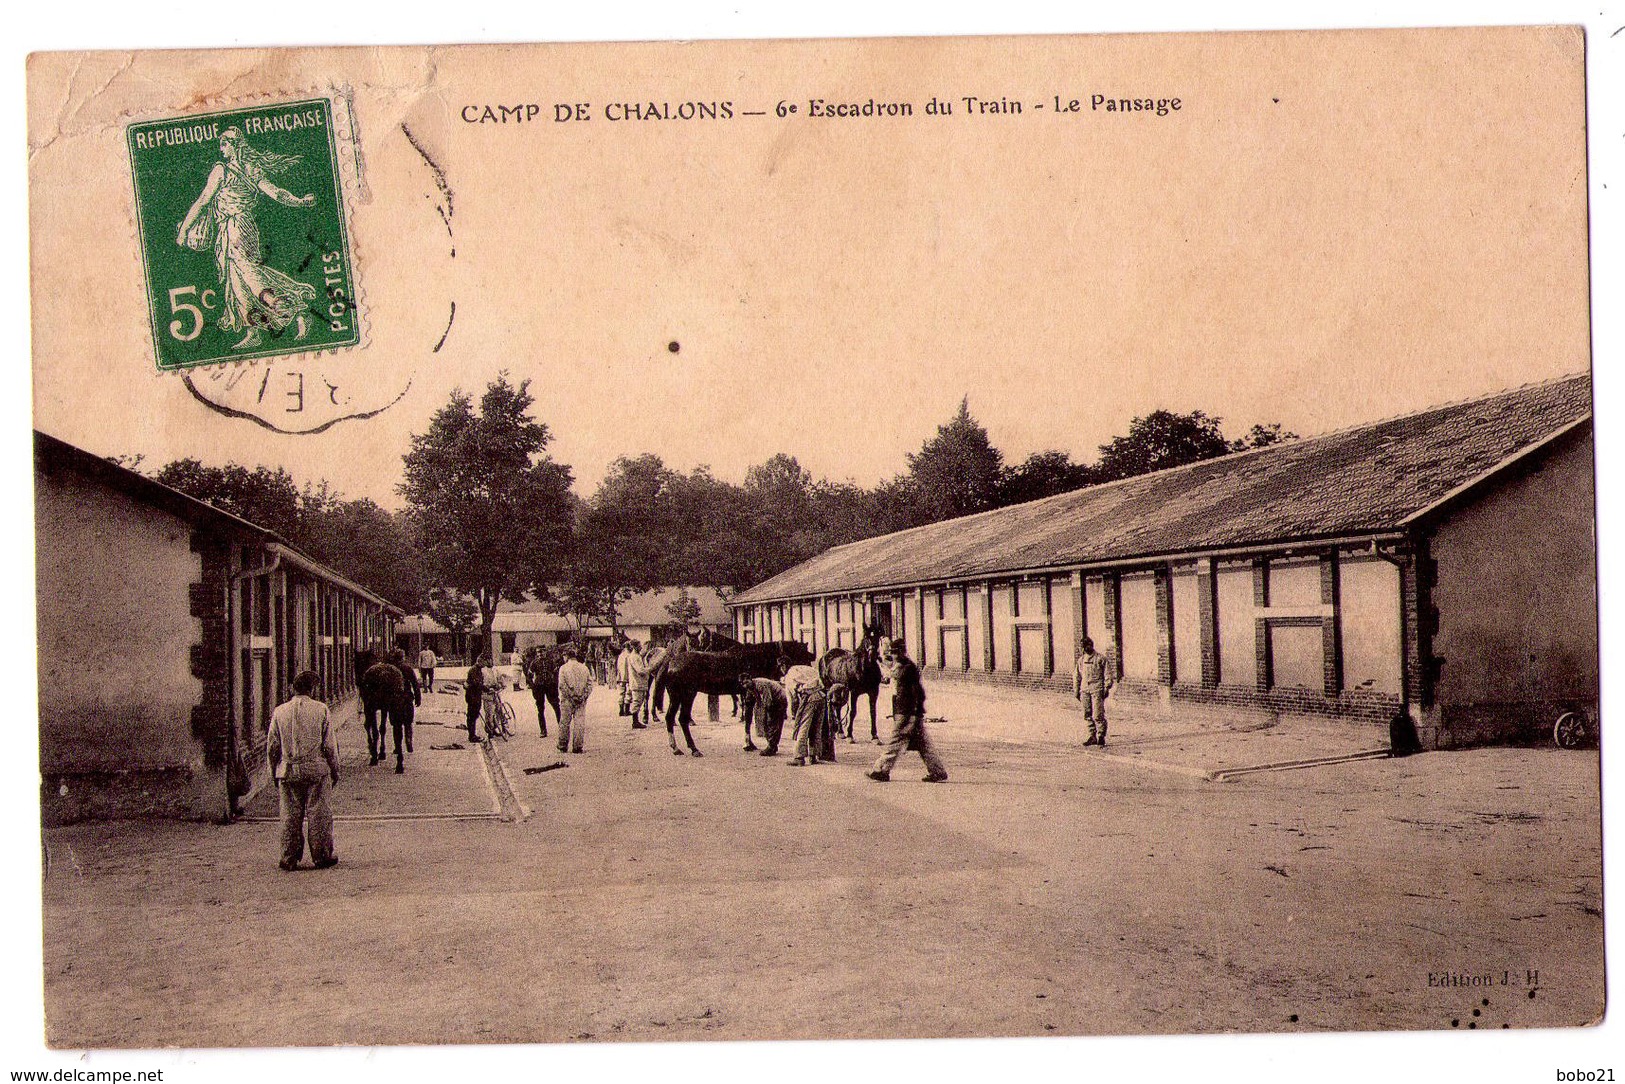 3272 - Camp De Chalon ( 51 ) - 6e Escadron Du Train ( Le Pansage ) - éd. J.HH. - - Camp De Châlons - Mourmelon